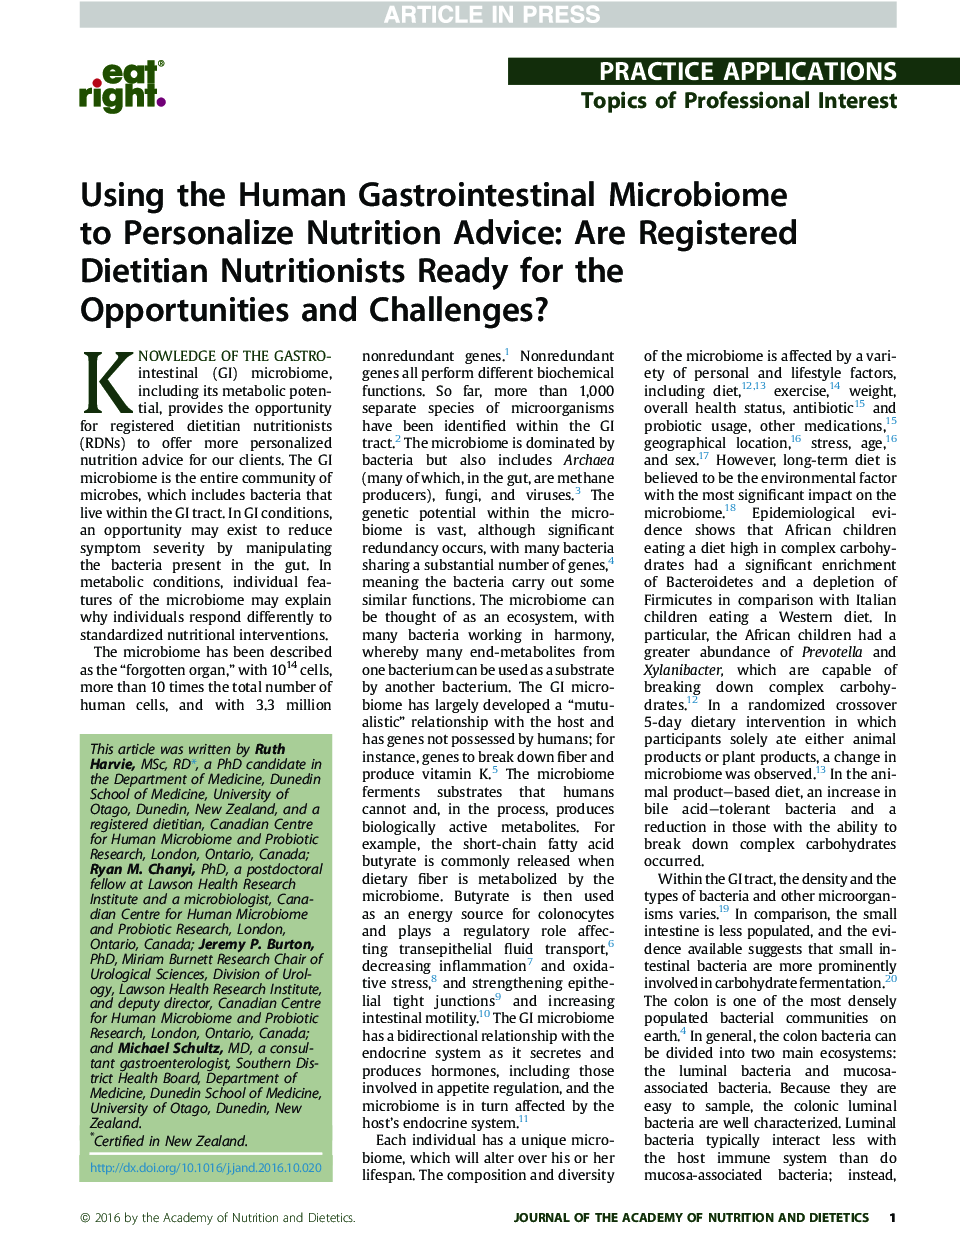 با استفاده از میکروبیوم مجاری گوارشی انسان برای مشاوره تغذیه شخصی: آیا متخصصان تغذیه متخصص تغذیه آماده فرصت و چالش هستند؟ 